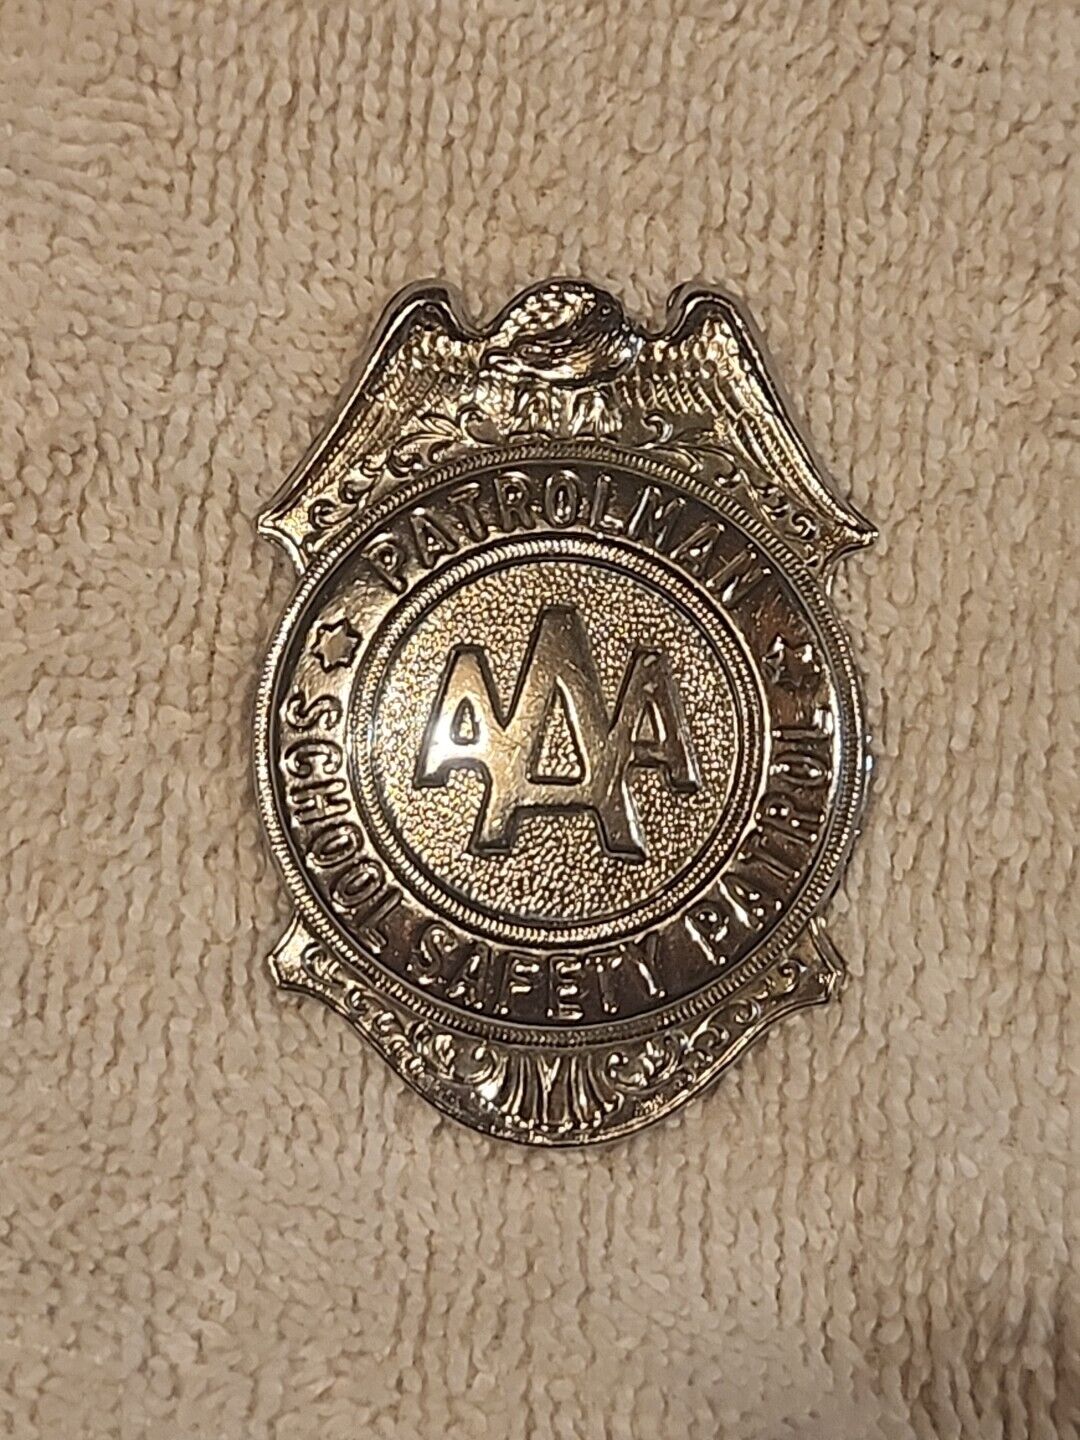 Vintage  AAA Patrolman School Safety Patrol  Metal Badge Pin NOS 2.5”